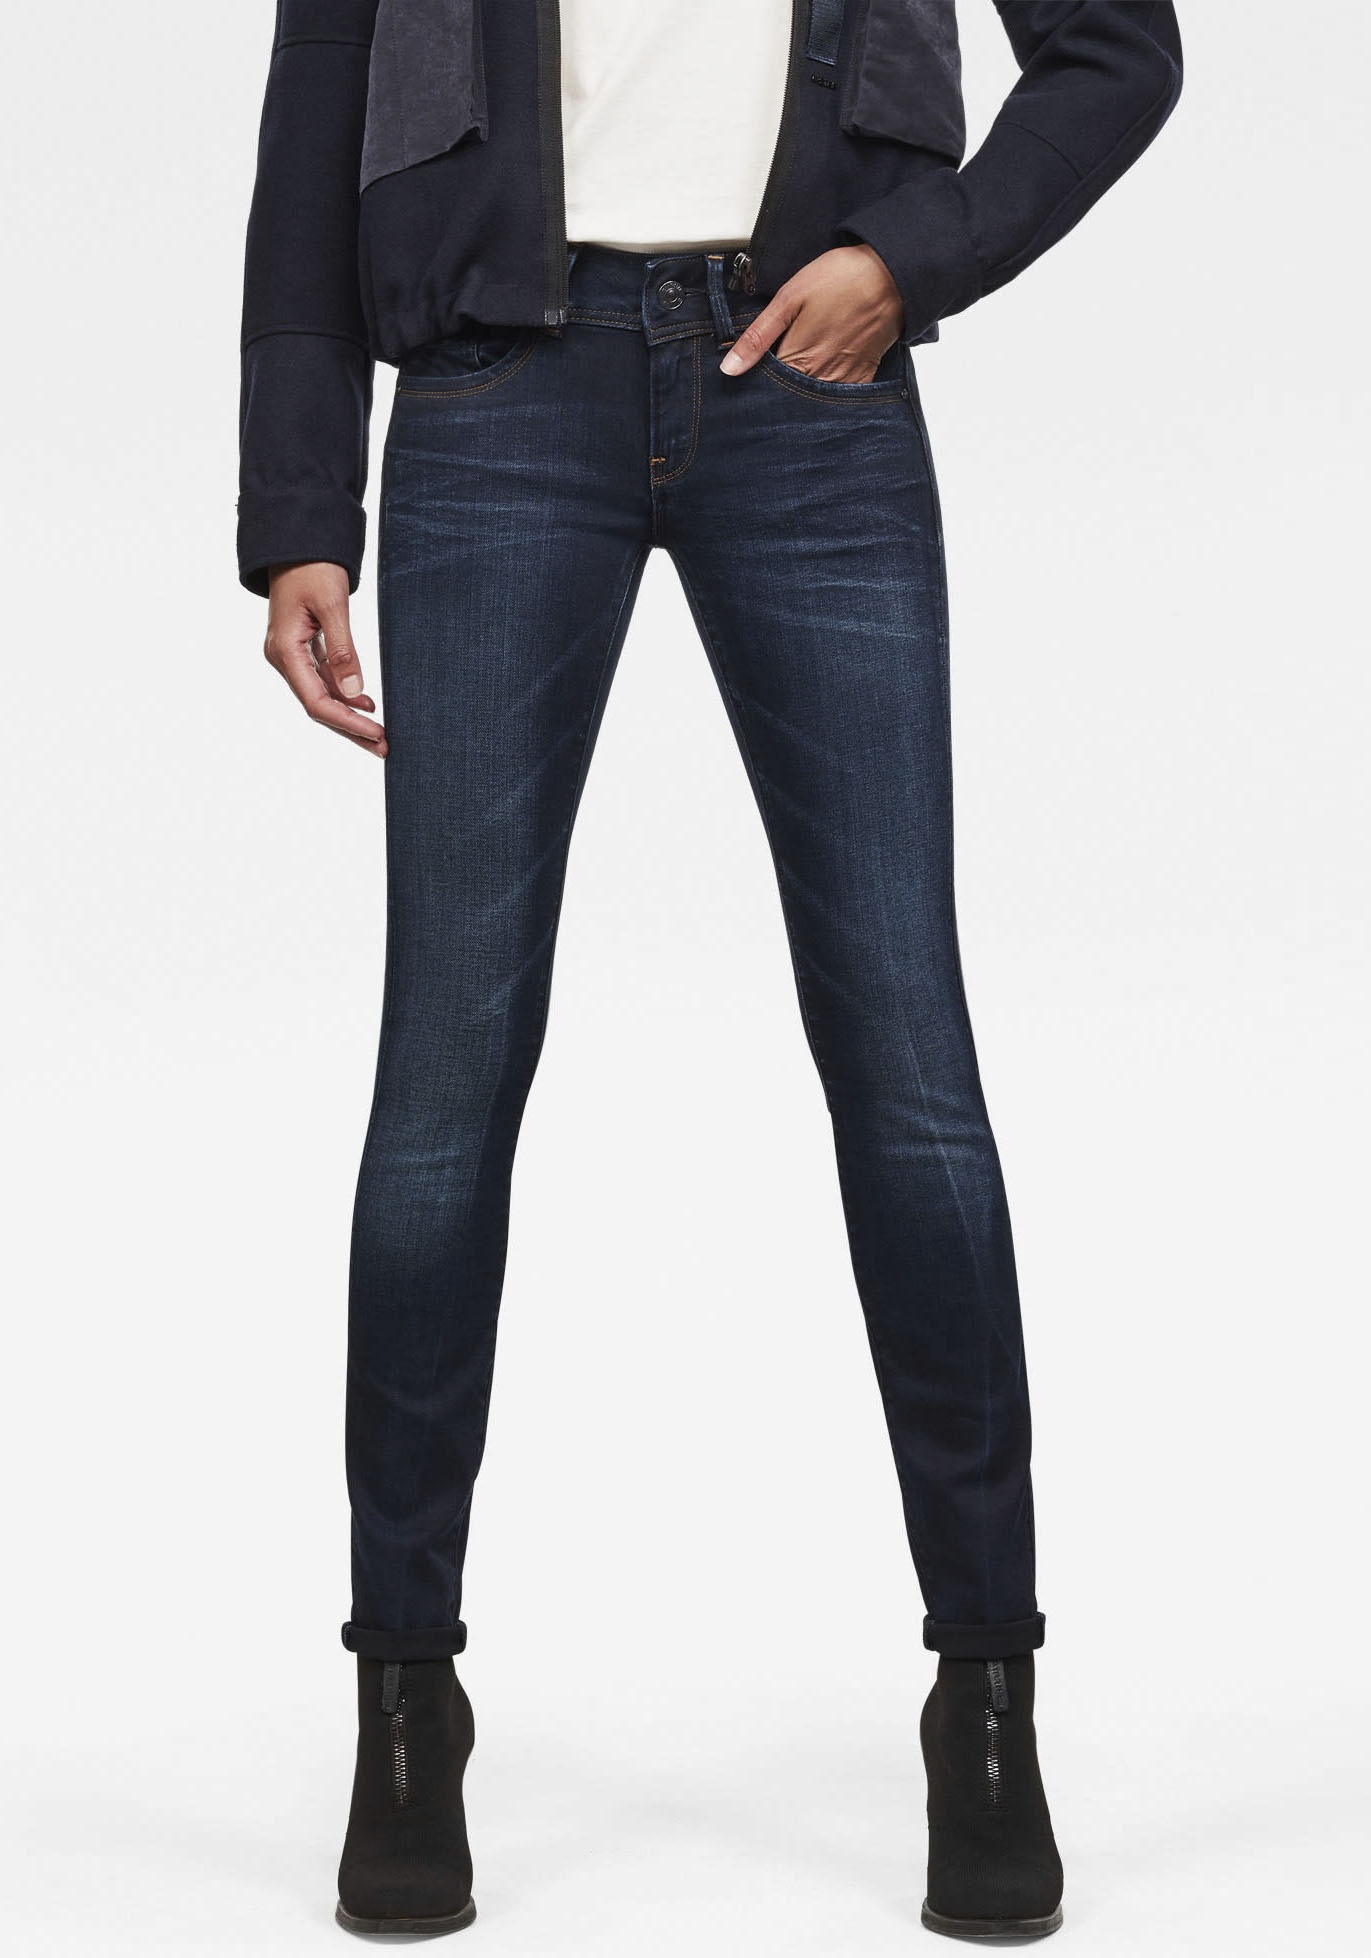 Skinny-fit-Jeans G-STAR RAW "Mid Waist Skinny" Gr. 32, Länge 32, blau (medium aged) Damen Jeans Röhrenjeans